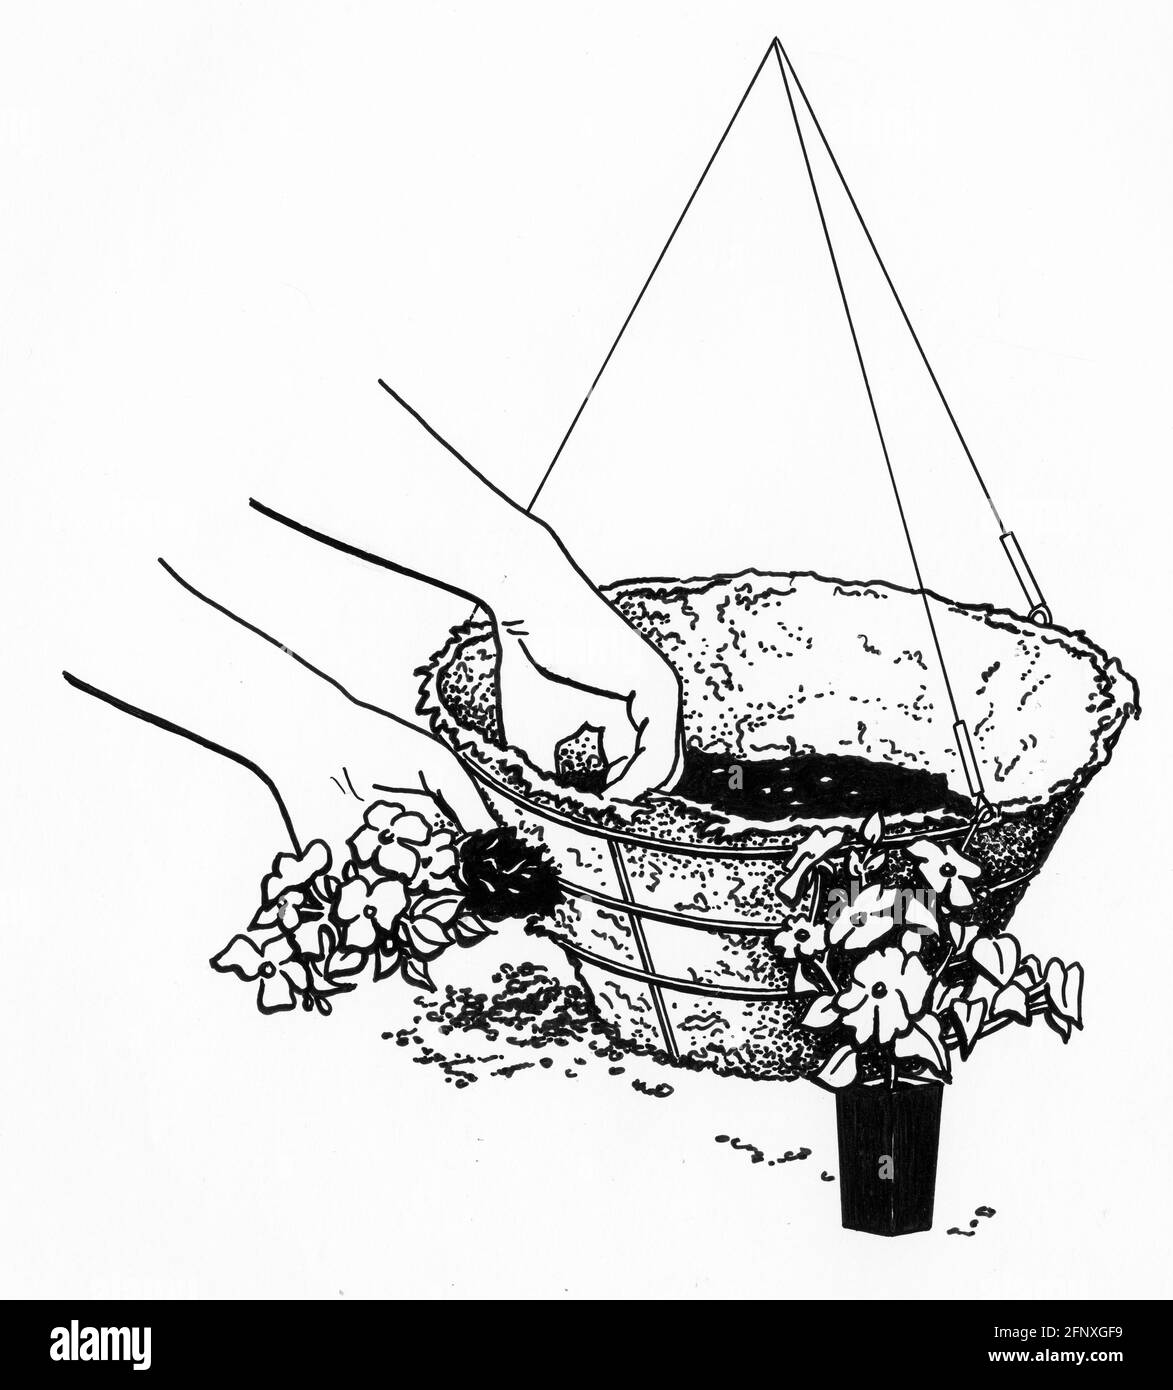 dessin d'une paire de mains pochant un trou dans un sac de mousse de sphagnum en préparation pour la plantation latérale un panier suspendu Banque D'Images